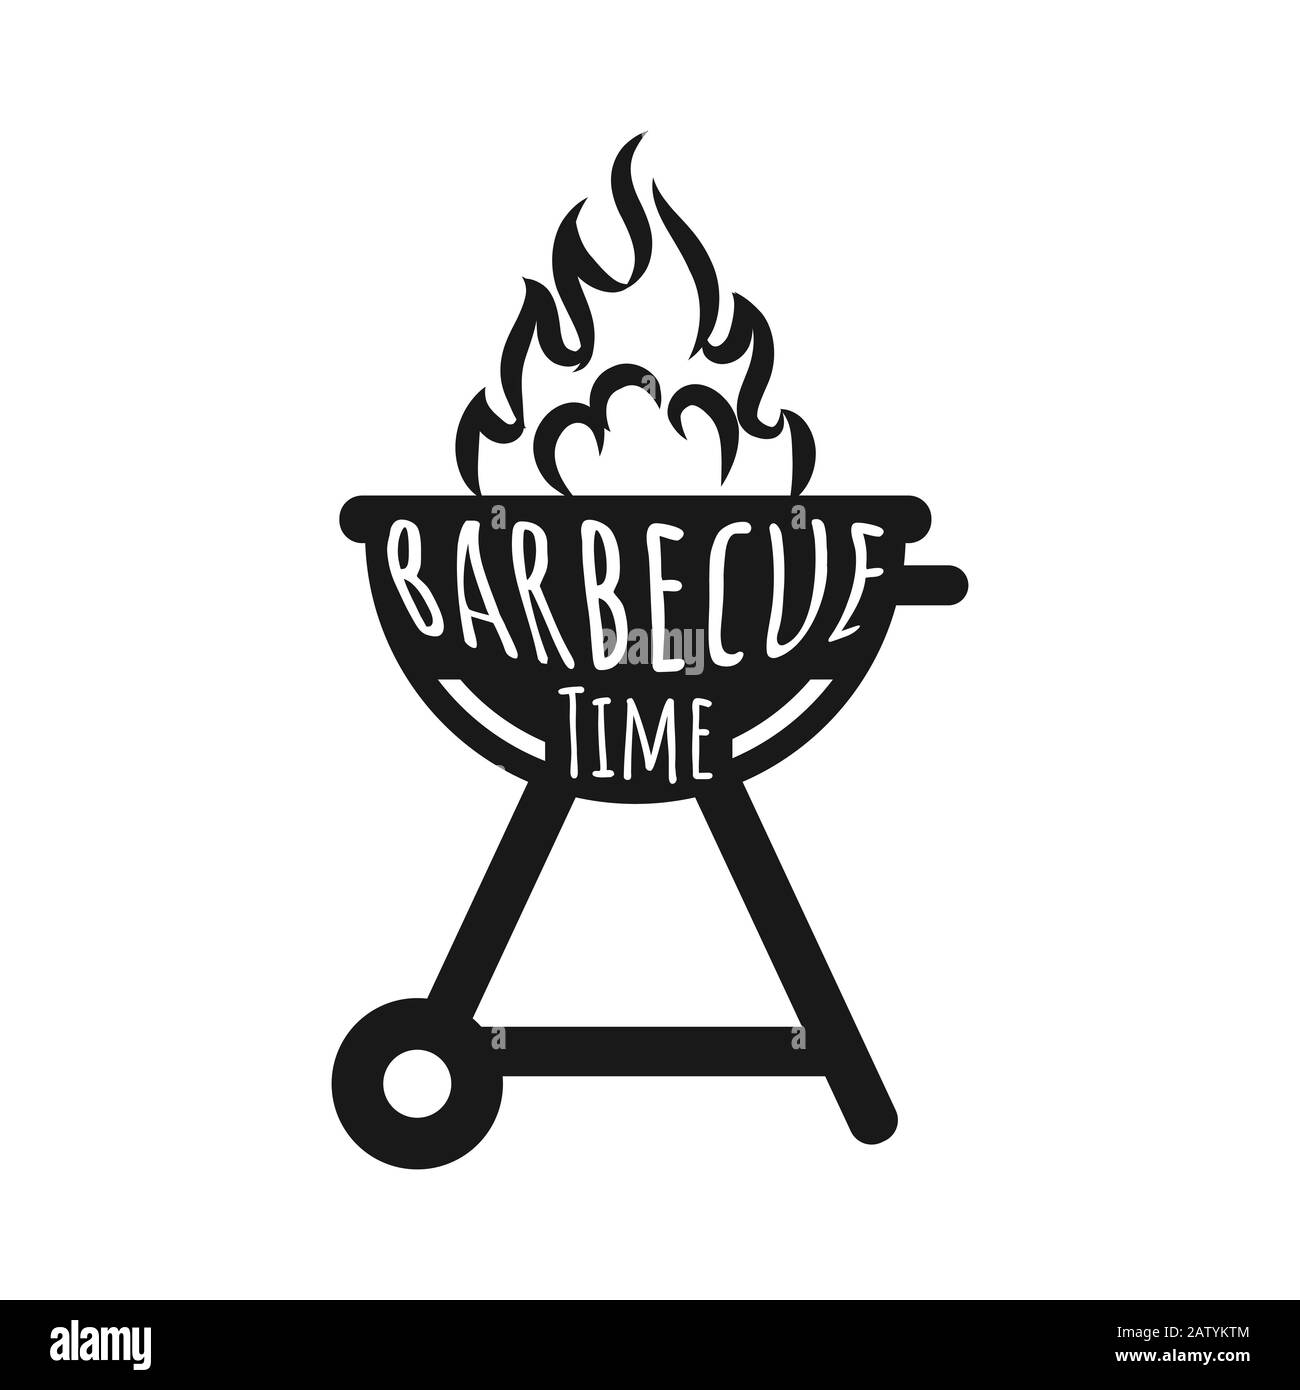 Vintage barbecue graphiques pour t-shirt, d'autres impressions. Barbecue Retro typographie tee, emblème pour tous ceux qui aiment l'été barbecue avec vos amis et famil Illustration de Vecteur